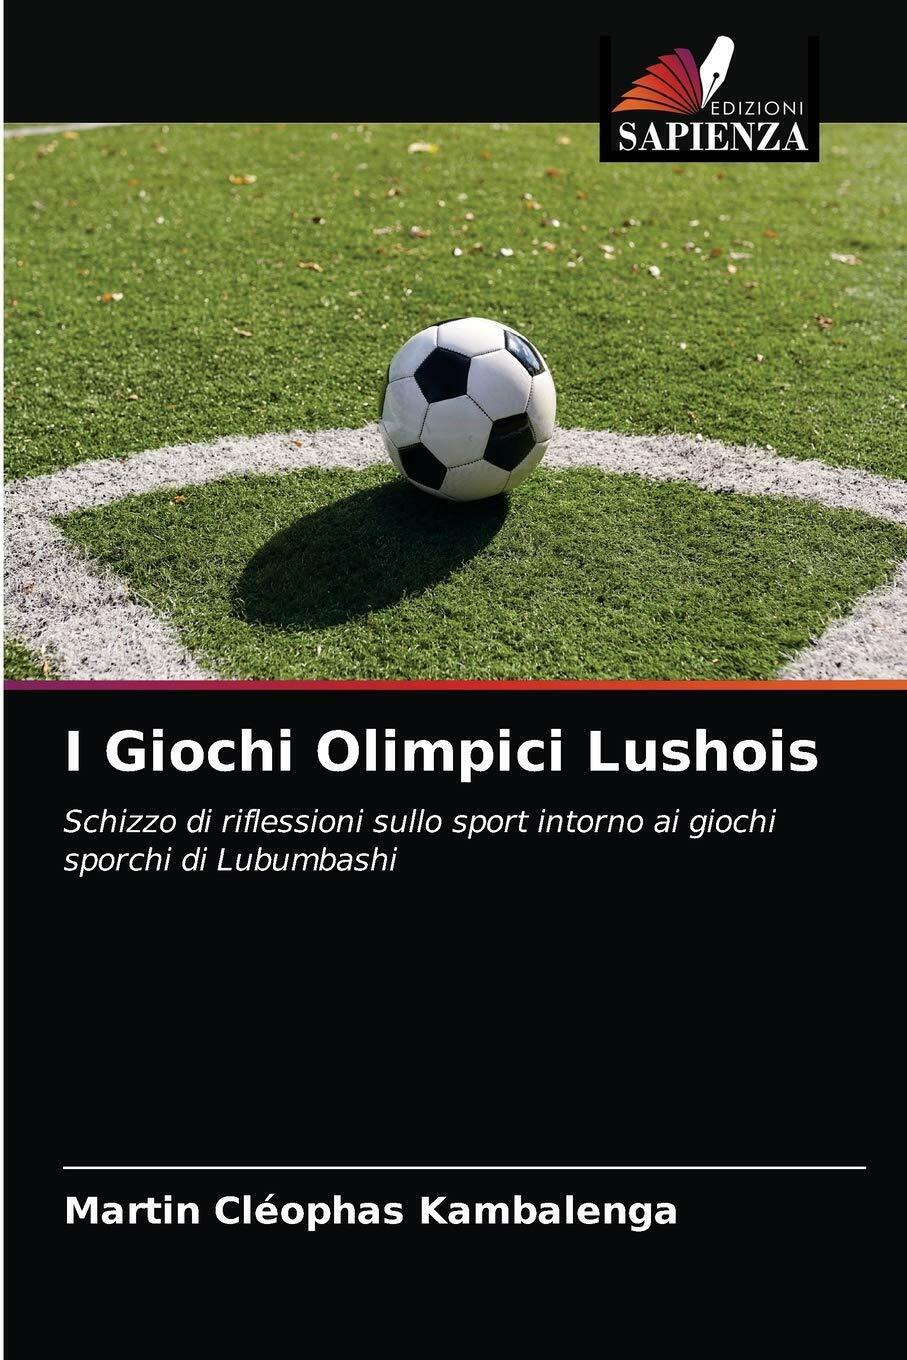 I Giochi Olimpici Lushois - MARTIN C KAMBALENGA - edizioni sapienza, 2021